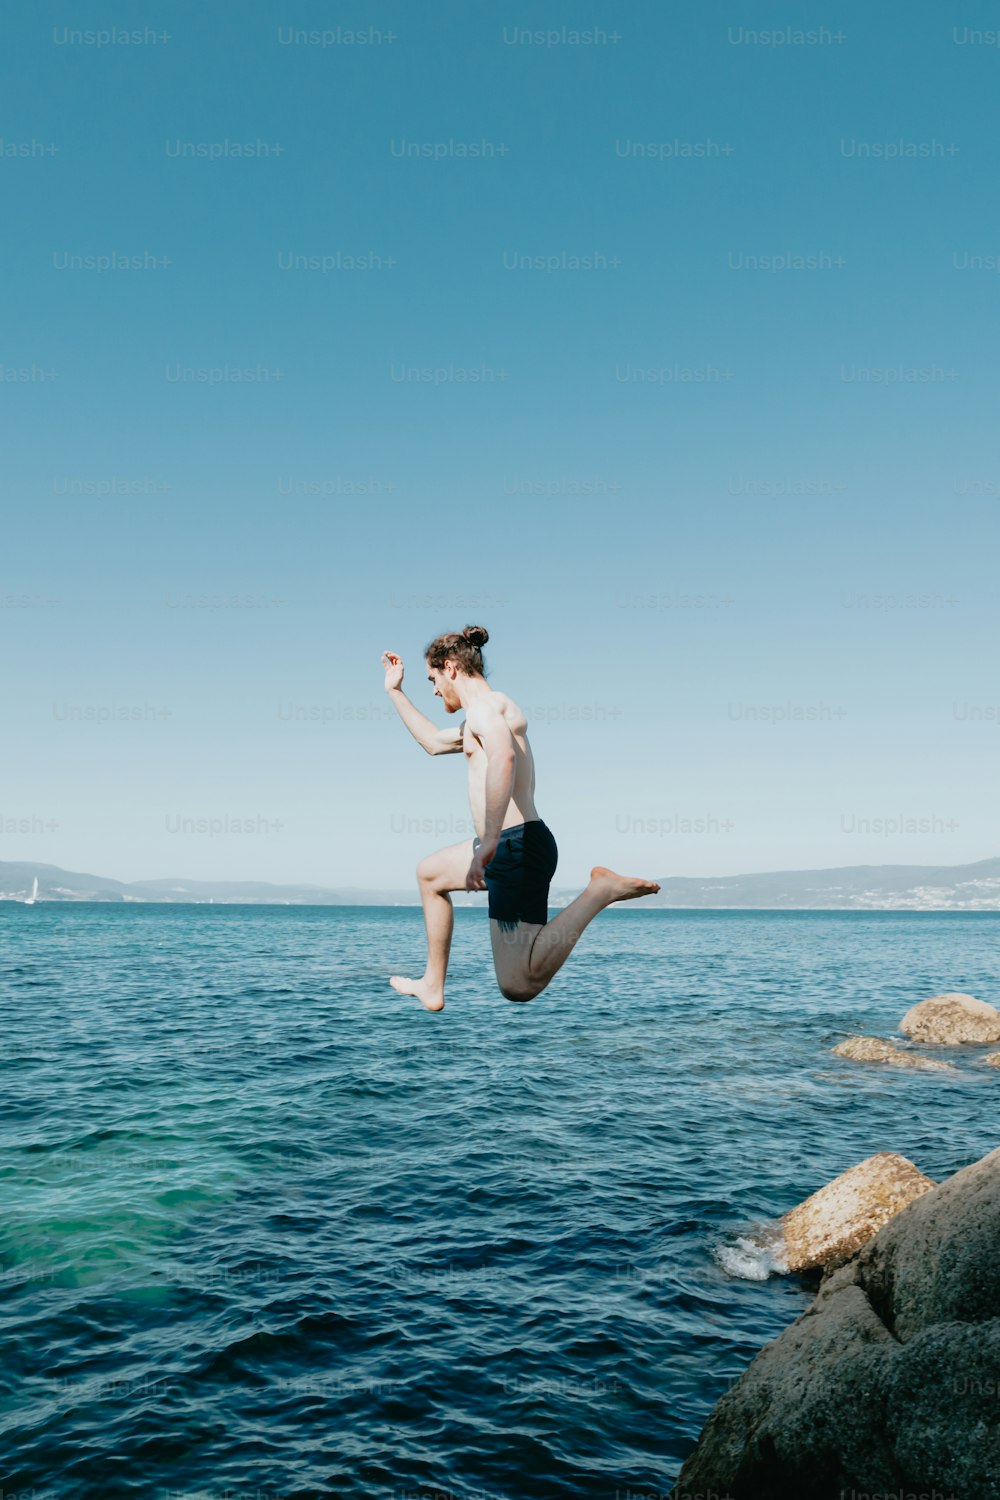 Un homme sautant d’une falaise dans l’océan